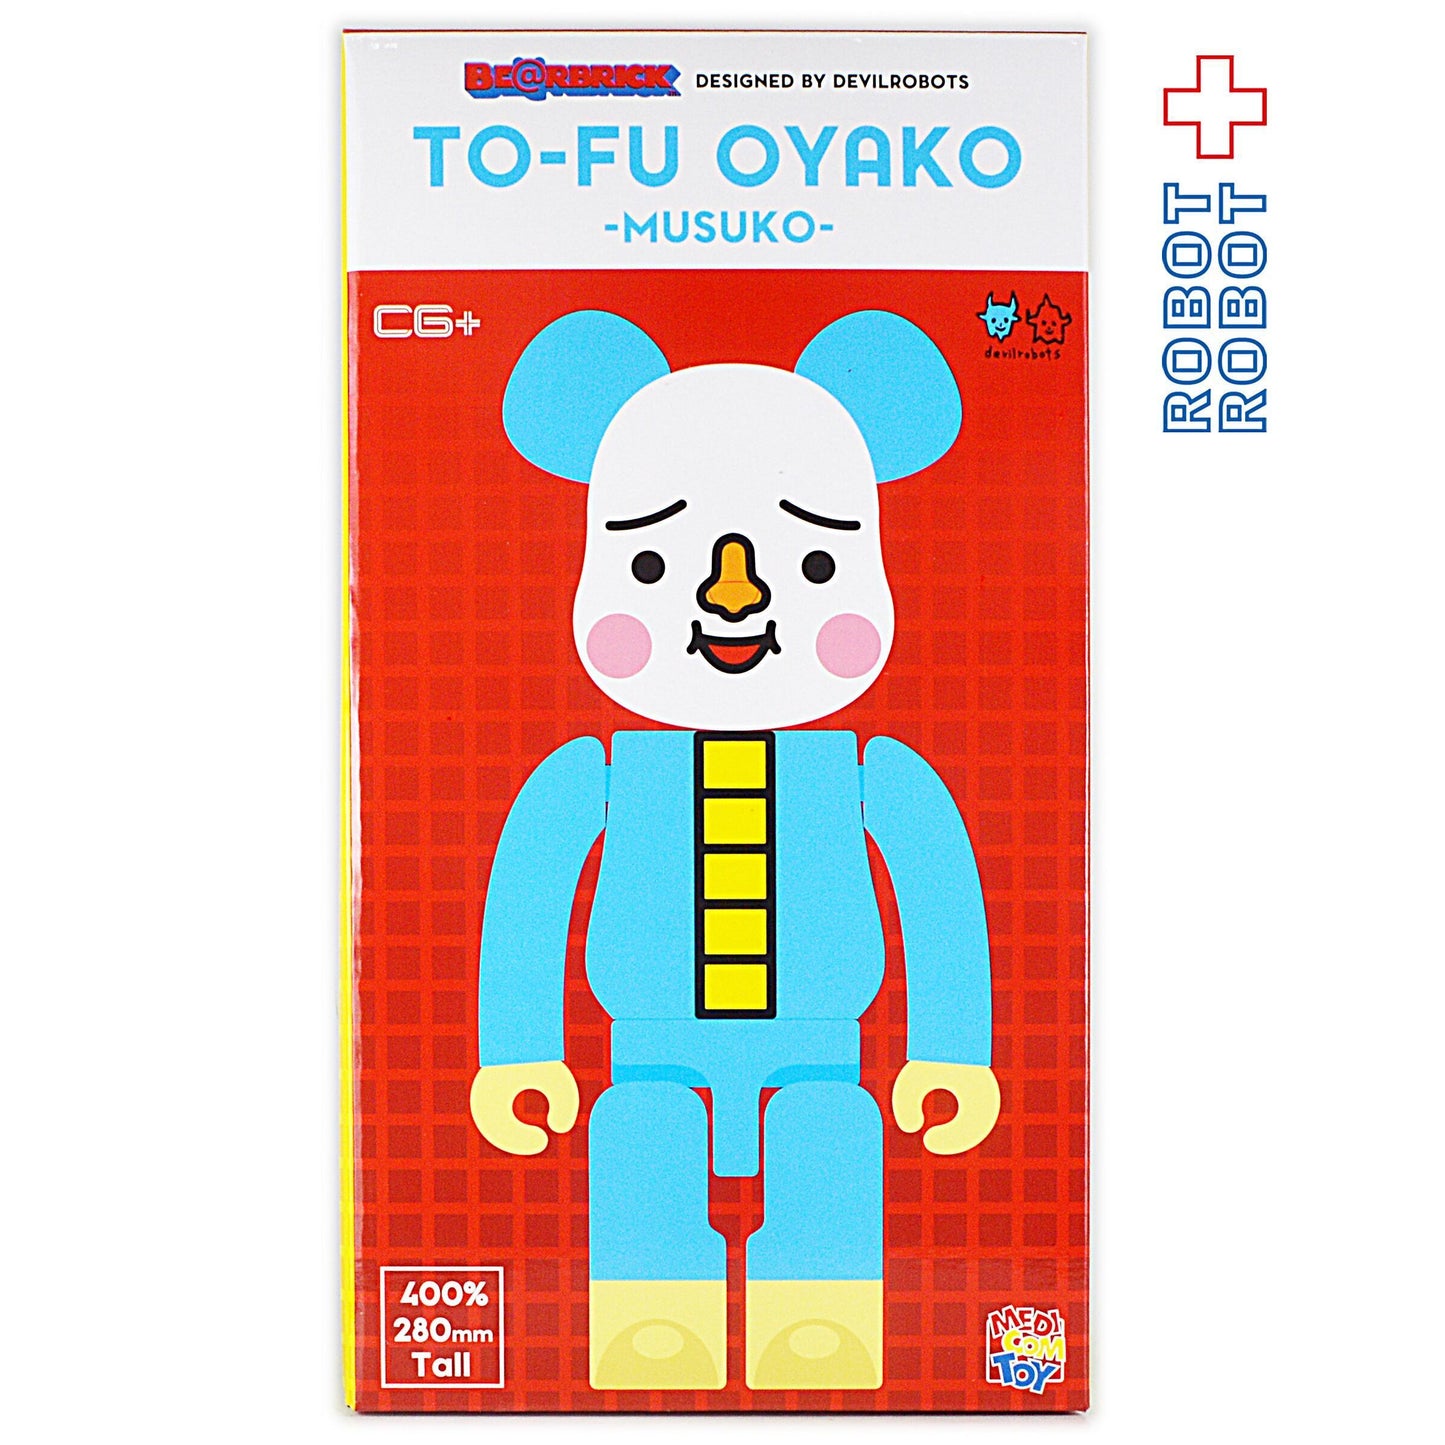 ●ベアブリック トーフ親子 TOFU OYAKO 400% OKAN & MUSUKO セット 未開封新品 BE@RBRICK